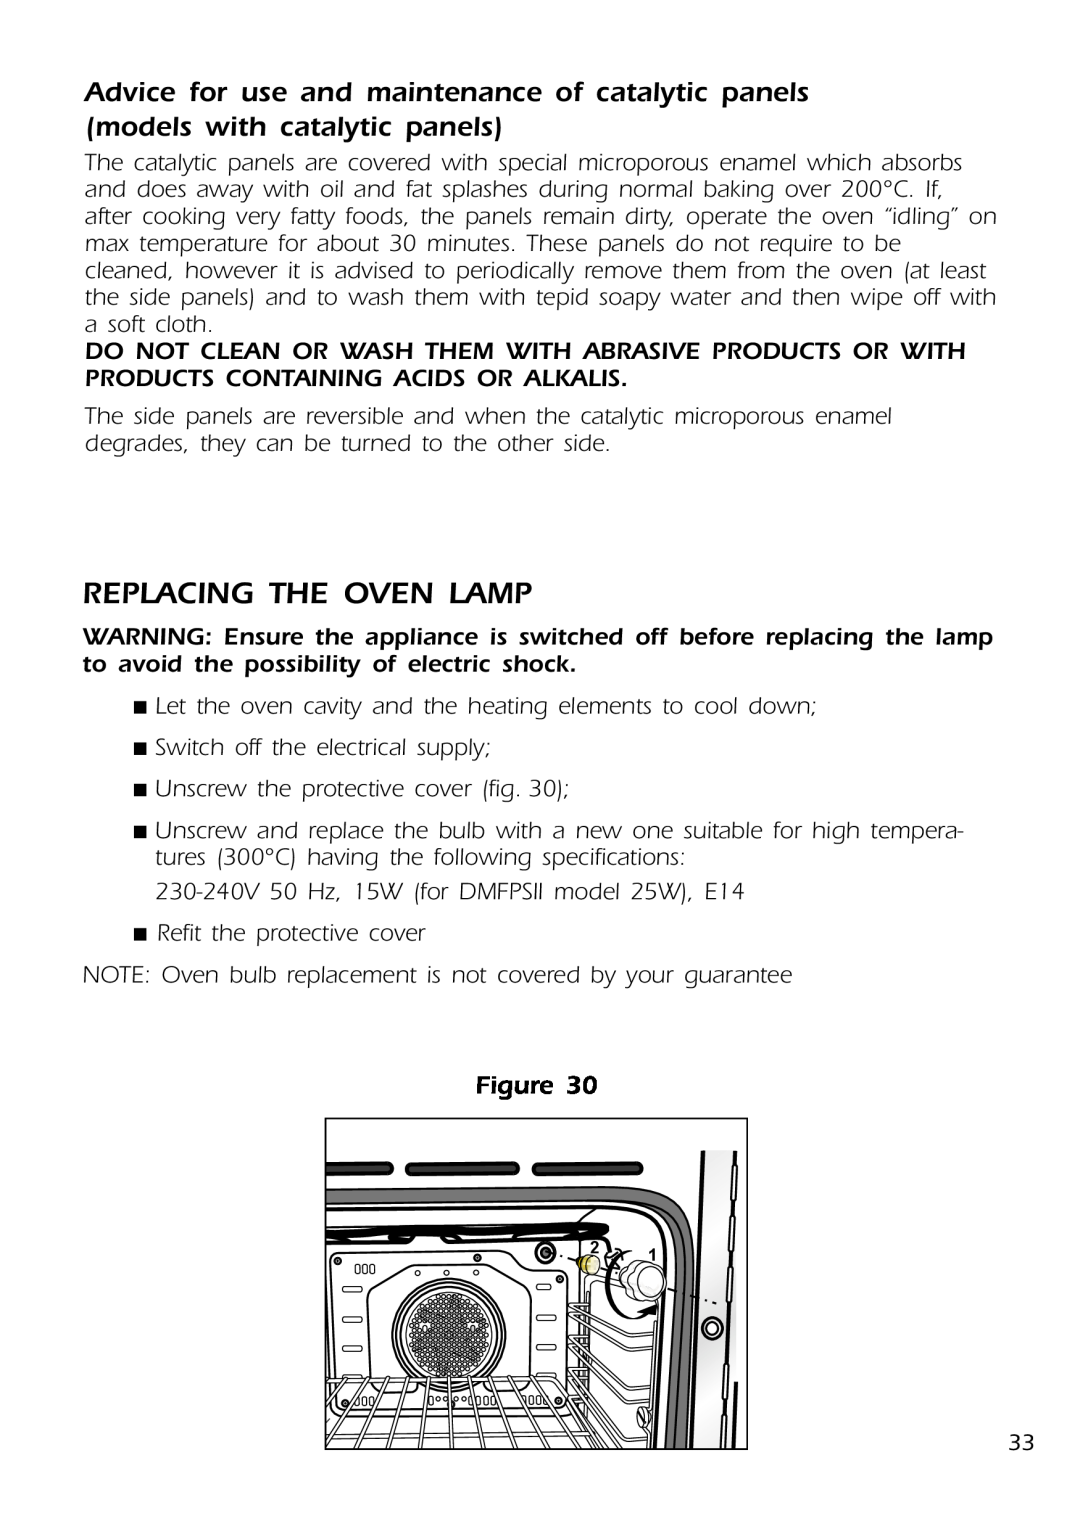 DeLonghi DMFPSII manual Replacing The Oven Lamp 